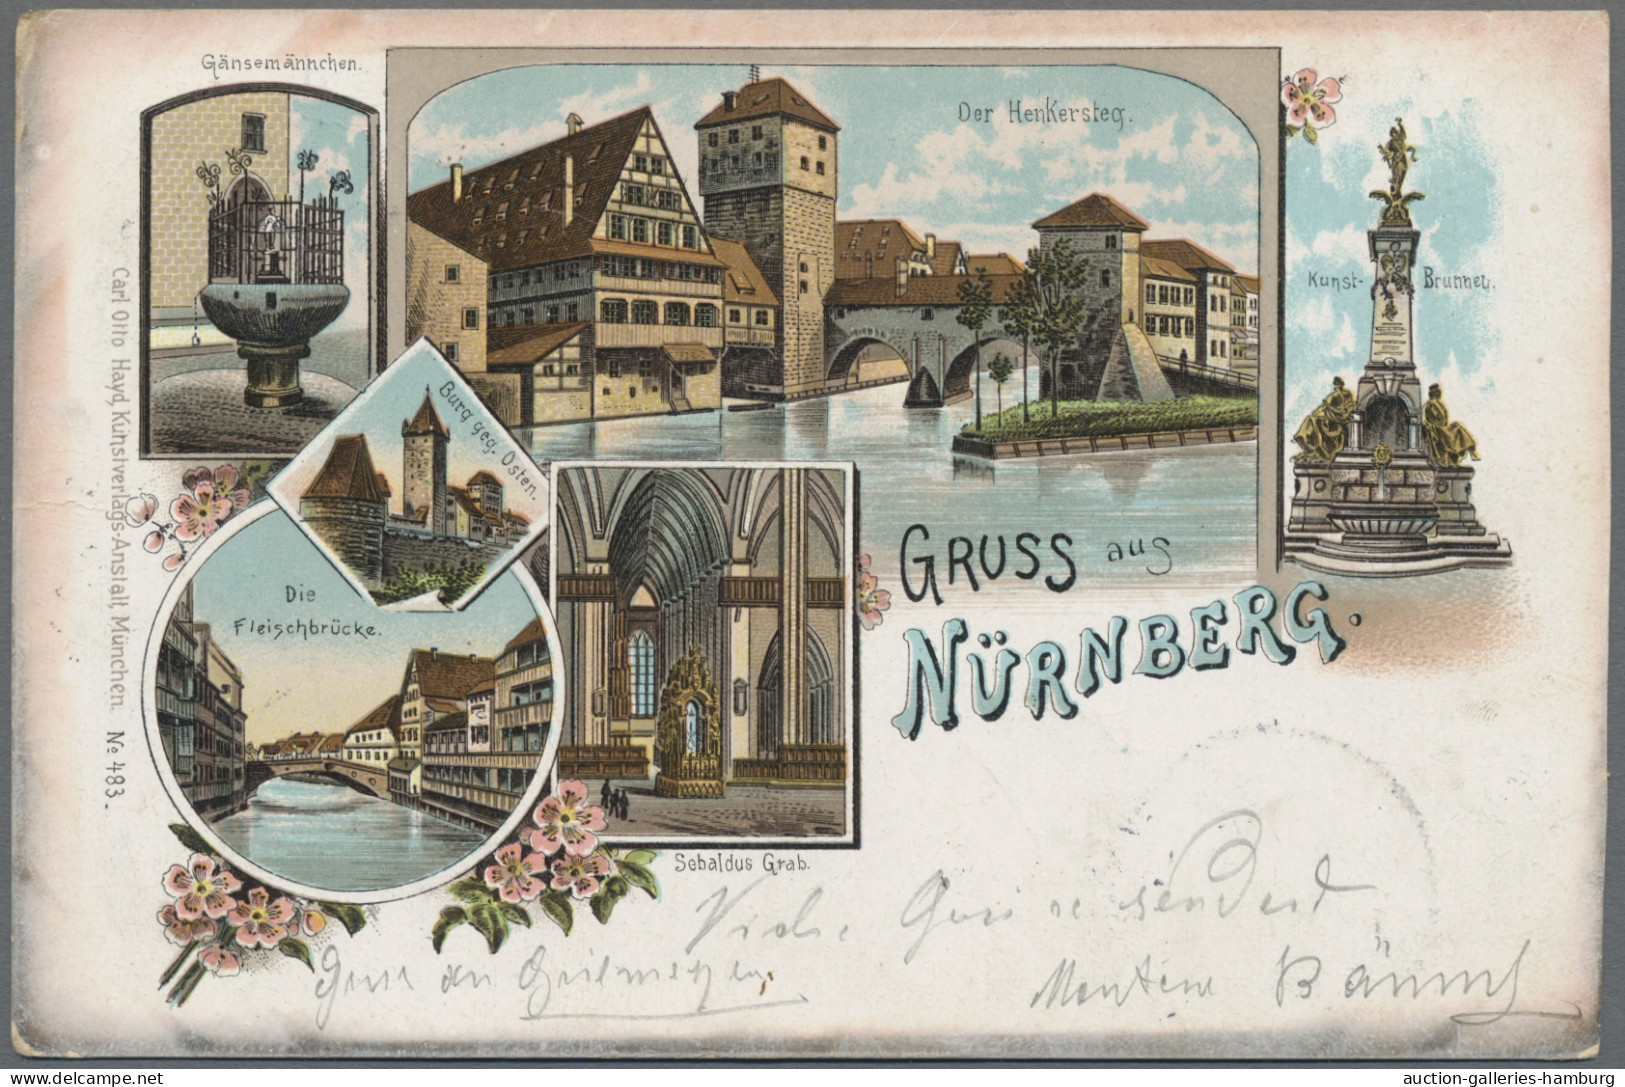 Ansichtskarten: 1896-1955, Partie von etwa 1.000 Ansichtskarten mit u.a. Deutsch